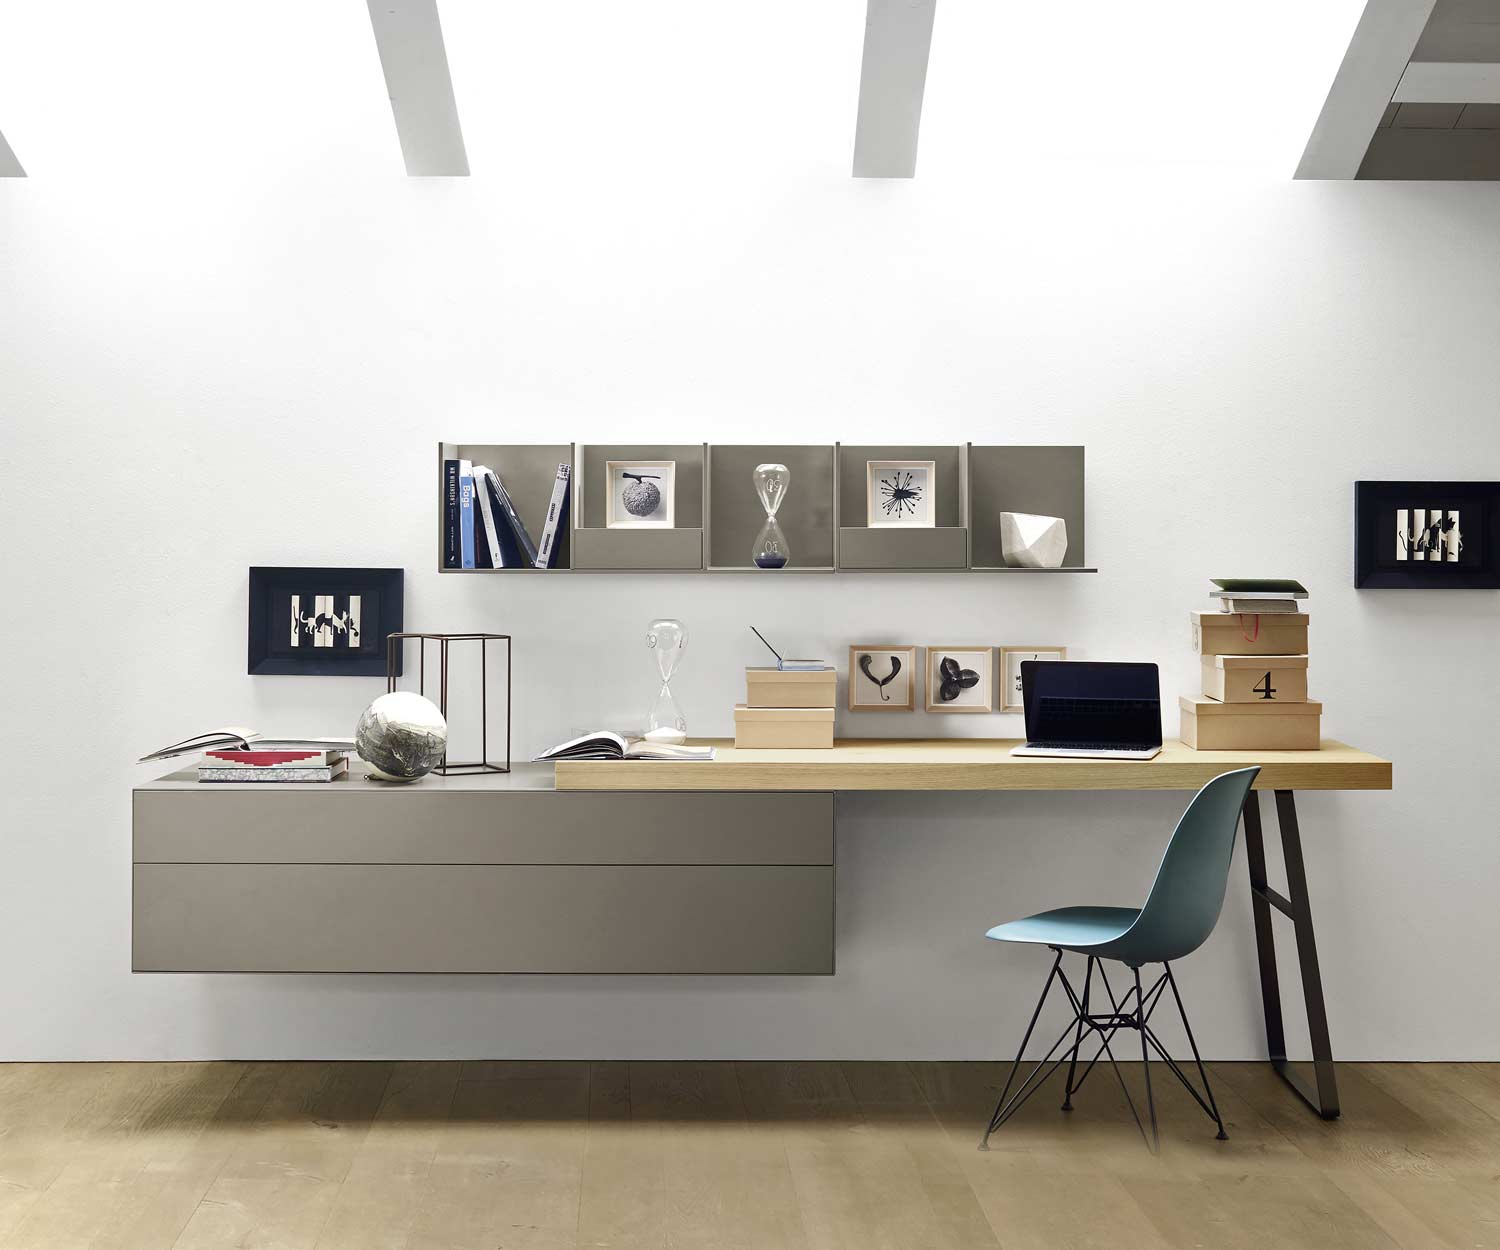 Livitalia Design wandplank met stoel omgebouwd tot bureau